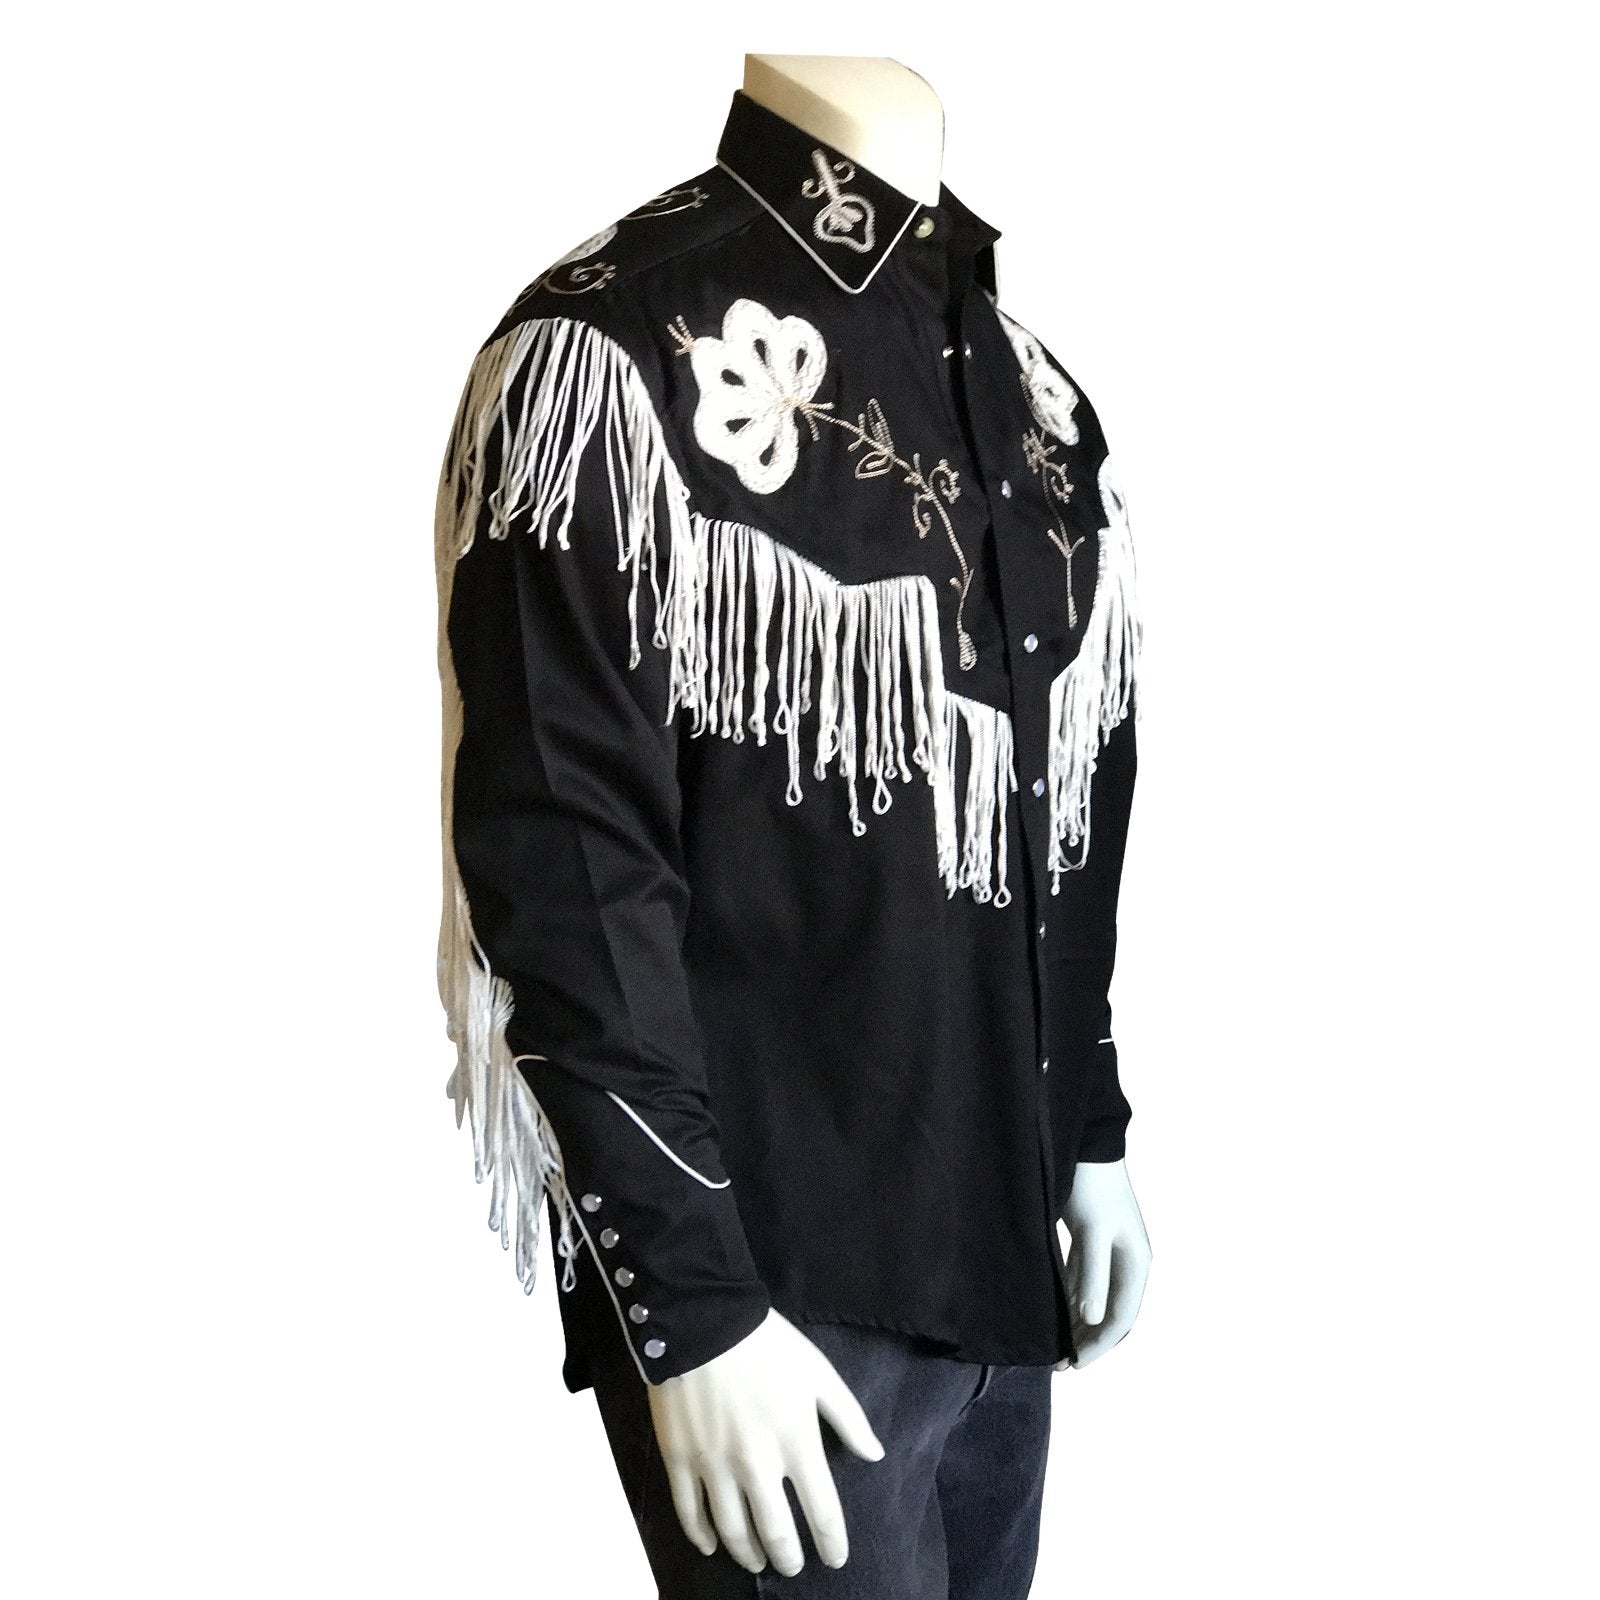 Vintage Inspired Western Shirt Men's Rockmount Fringe Black S-2XL